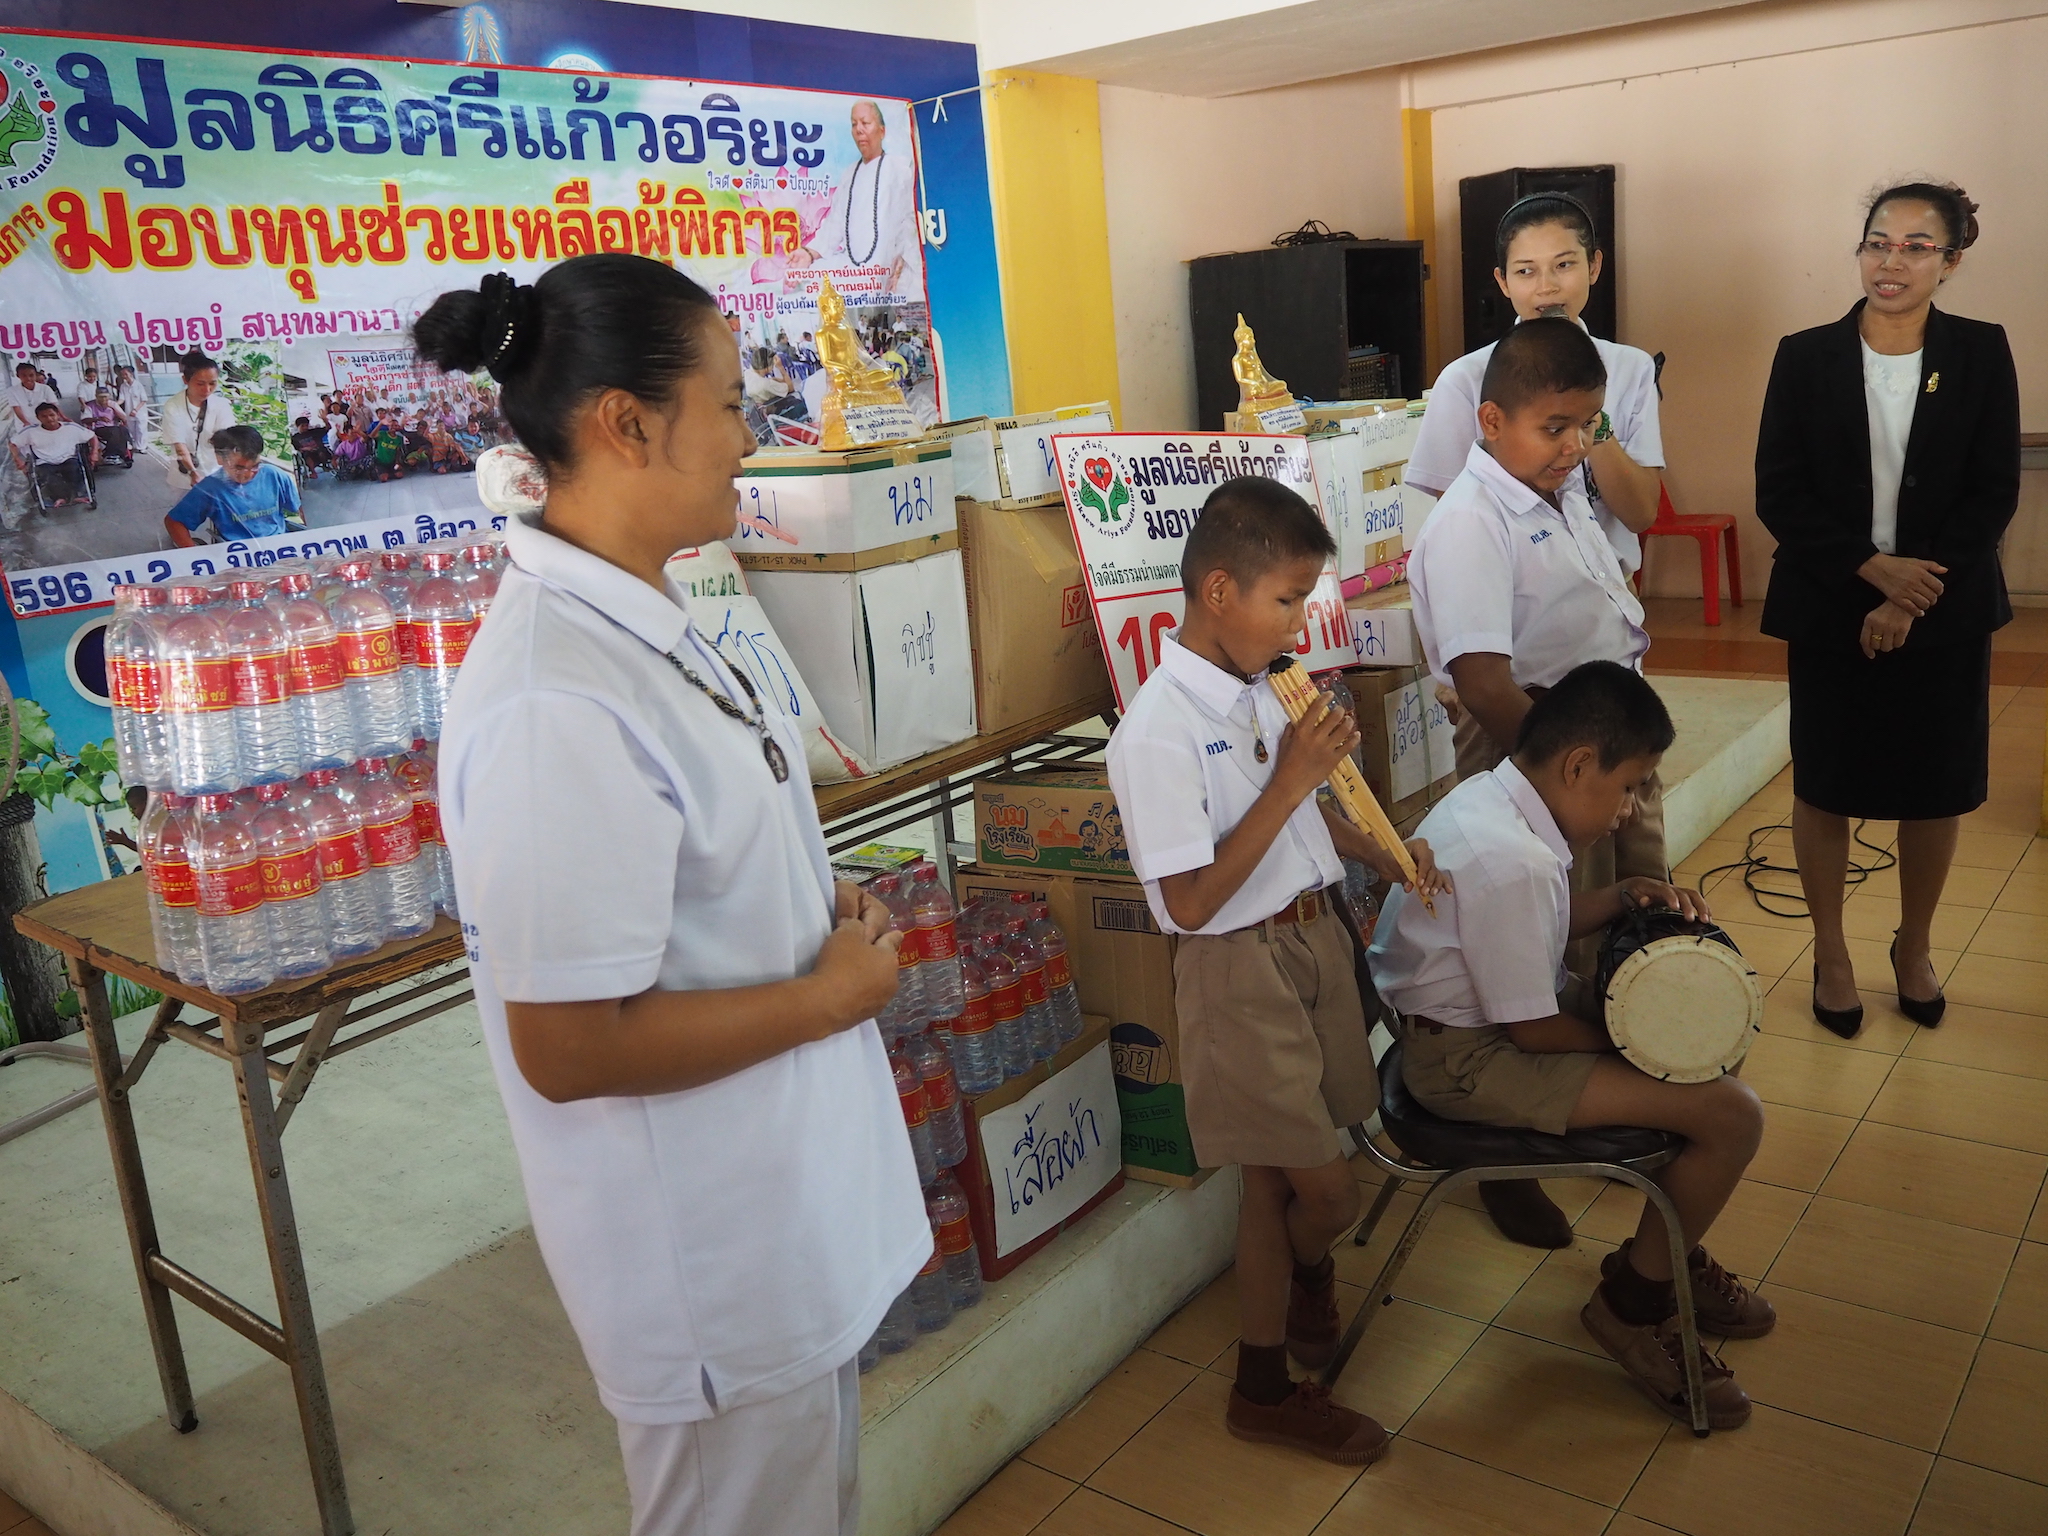 โครงการมอบทุนช่วยเหลือผู้พิการ วันที่  5 มกราคม 2560 ณ โรงเรียนการศึกษาคนตาบอดร้อยเอ็ด ต.ดงลาน อ.เมือง จ.ร้อยเอ็ด